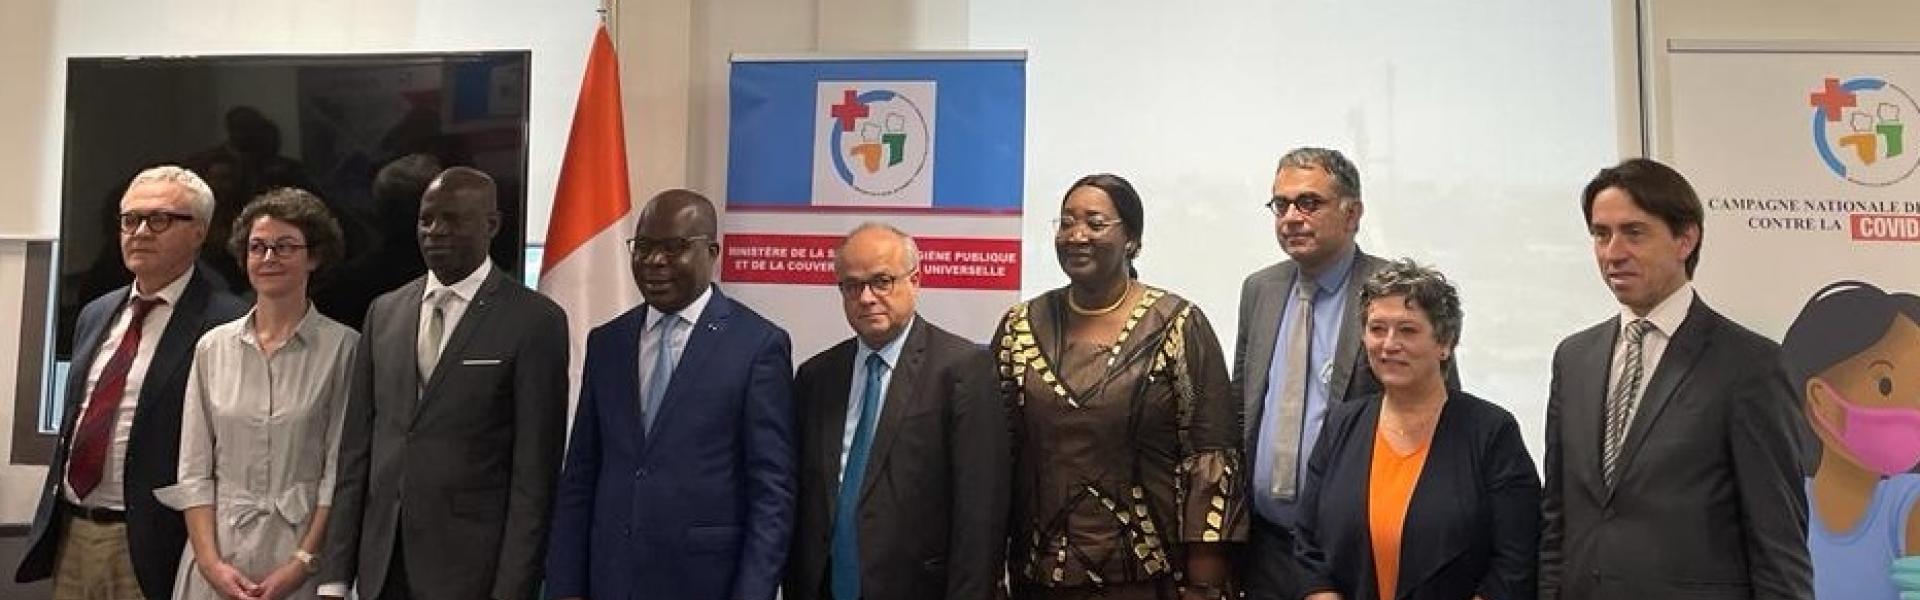 Renforcement du partenariat franco-ivoirien à travers la création d’une plateforme de recherche internationale en santé mondiale (PRISME)